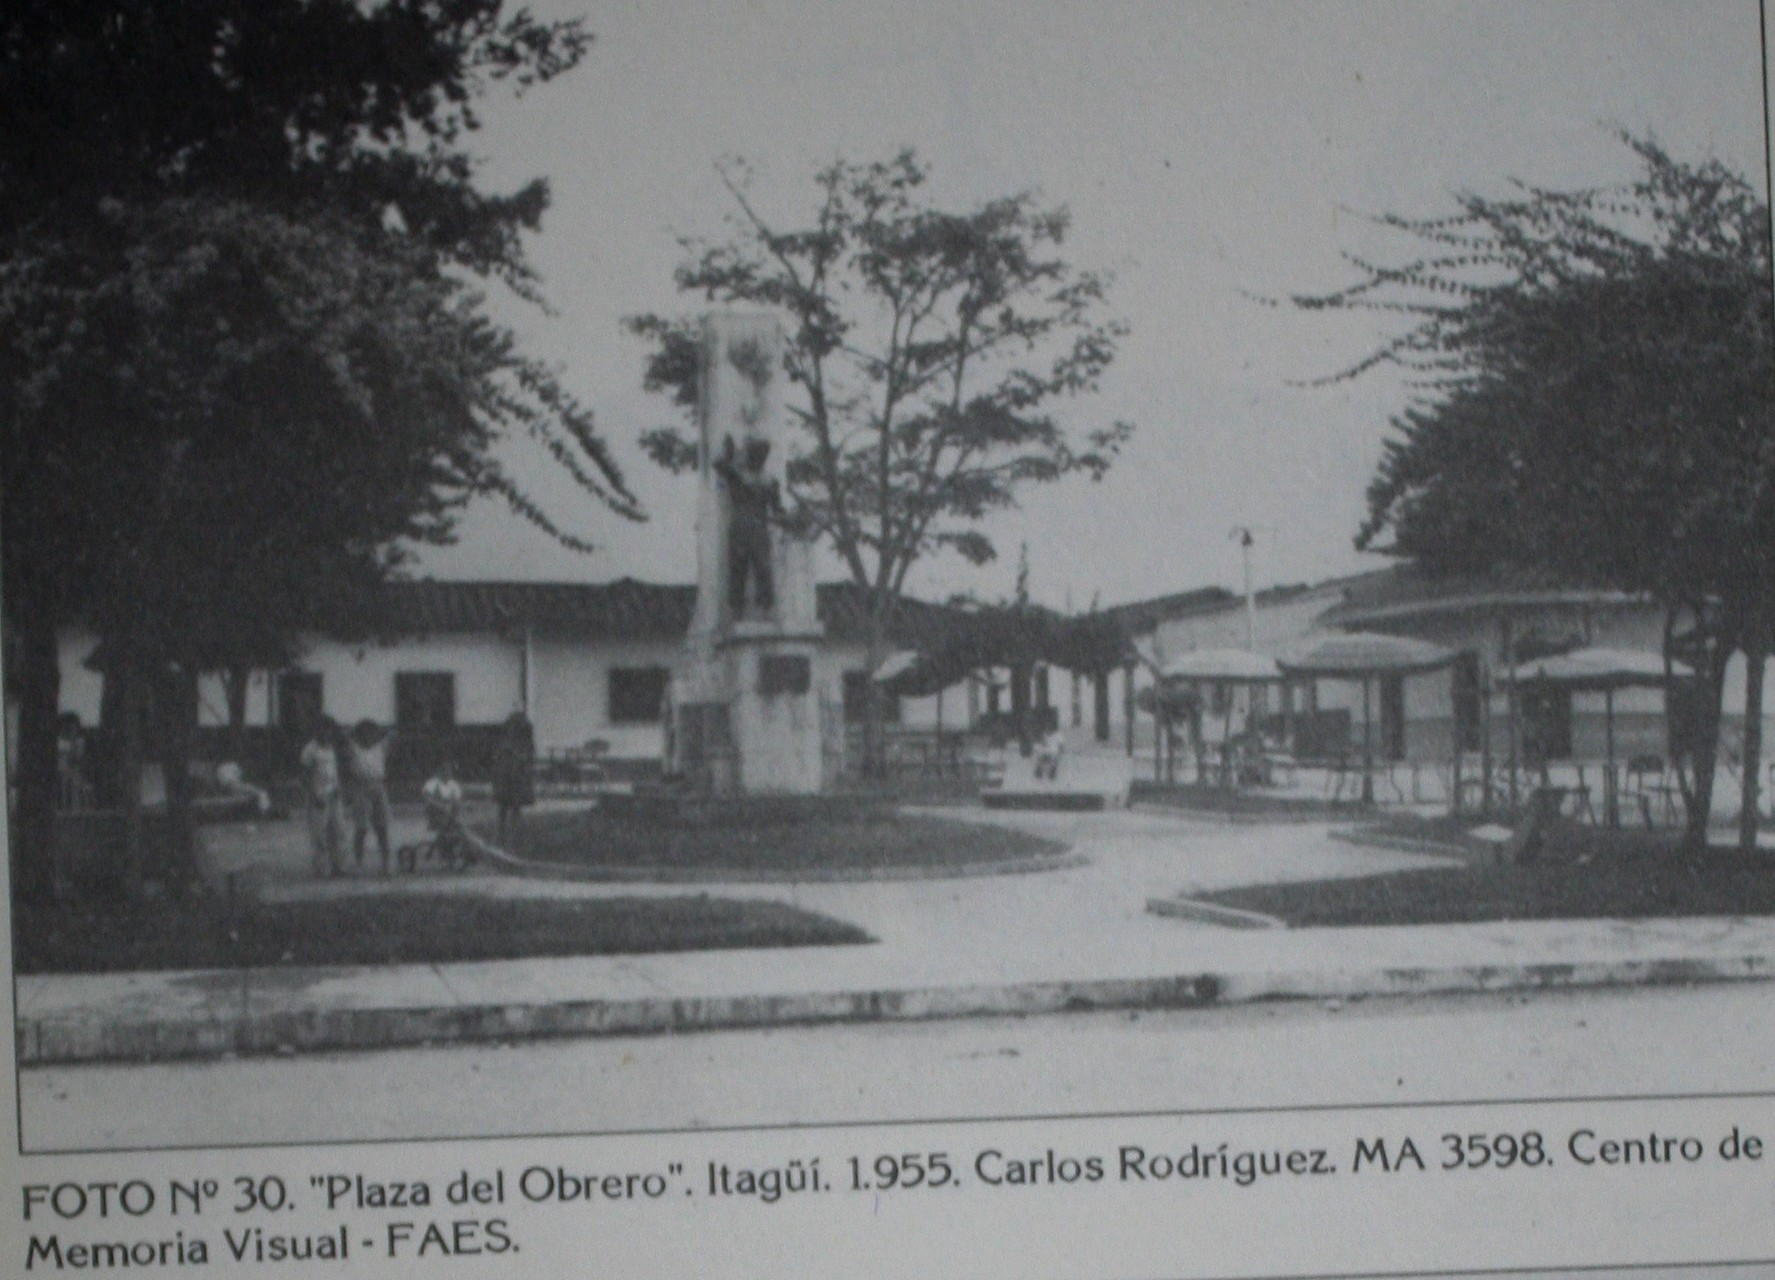 Parque Obrero 1955. Imagen extraída del centro de Historia de itagüí